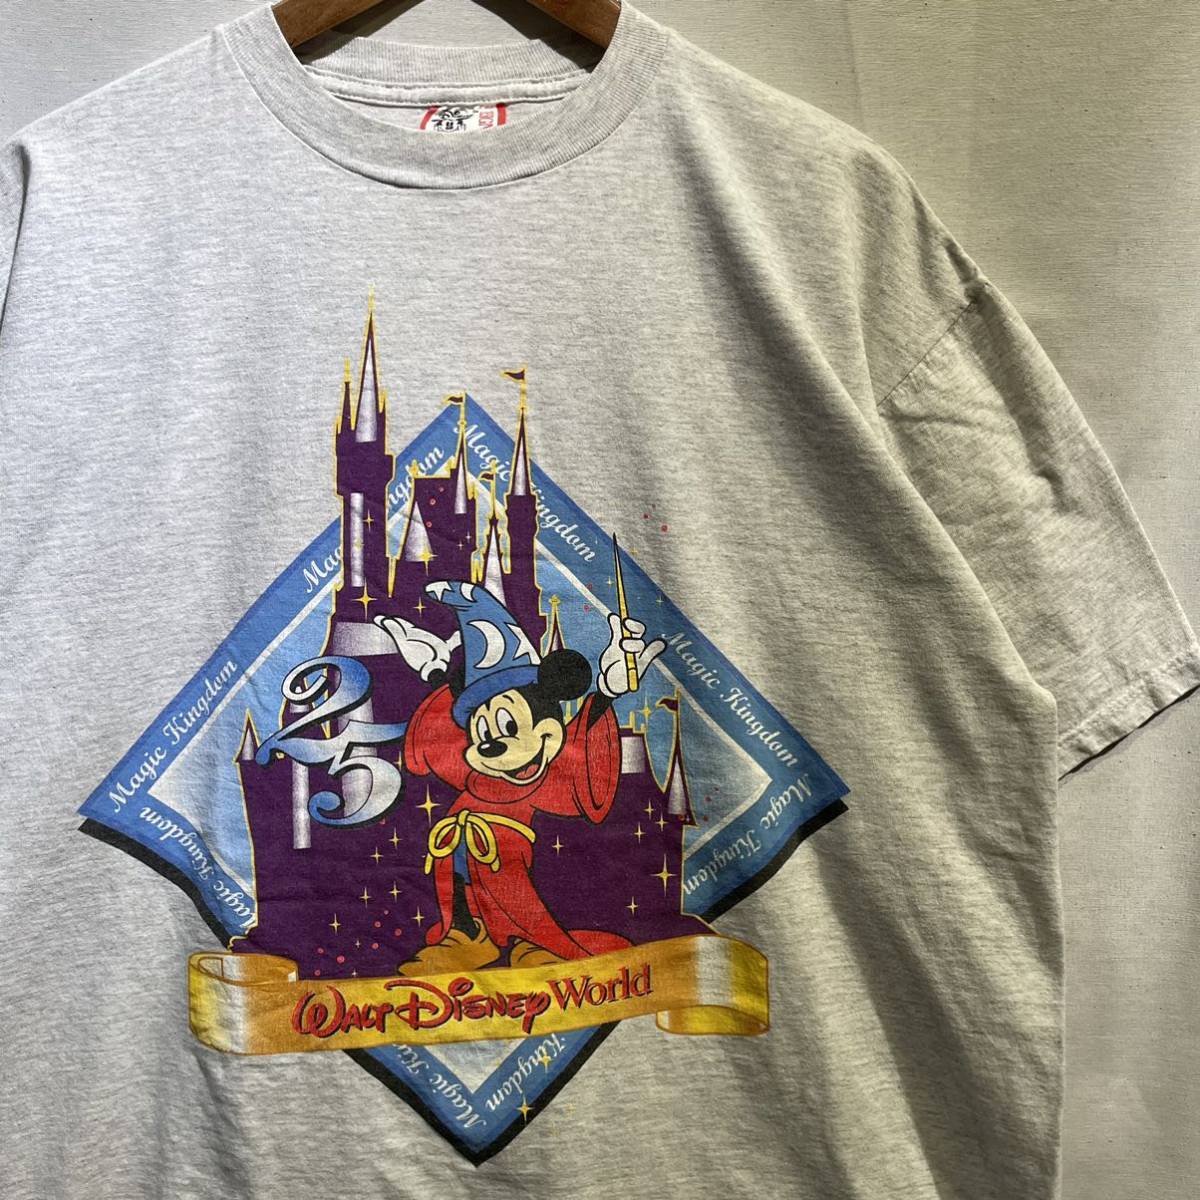 【レア】90s Disney “Fantasia Mickey” Tシャツ USA製 XL ビンテージ ファンタジア ミッキー / 古着 アート  ムービー ヴィランズ 80s